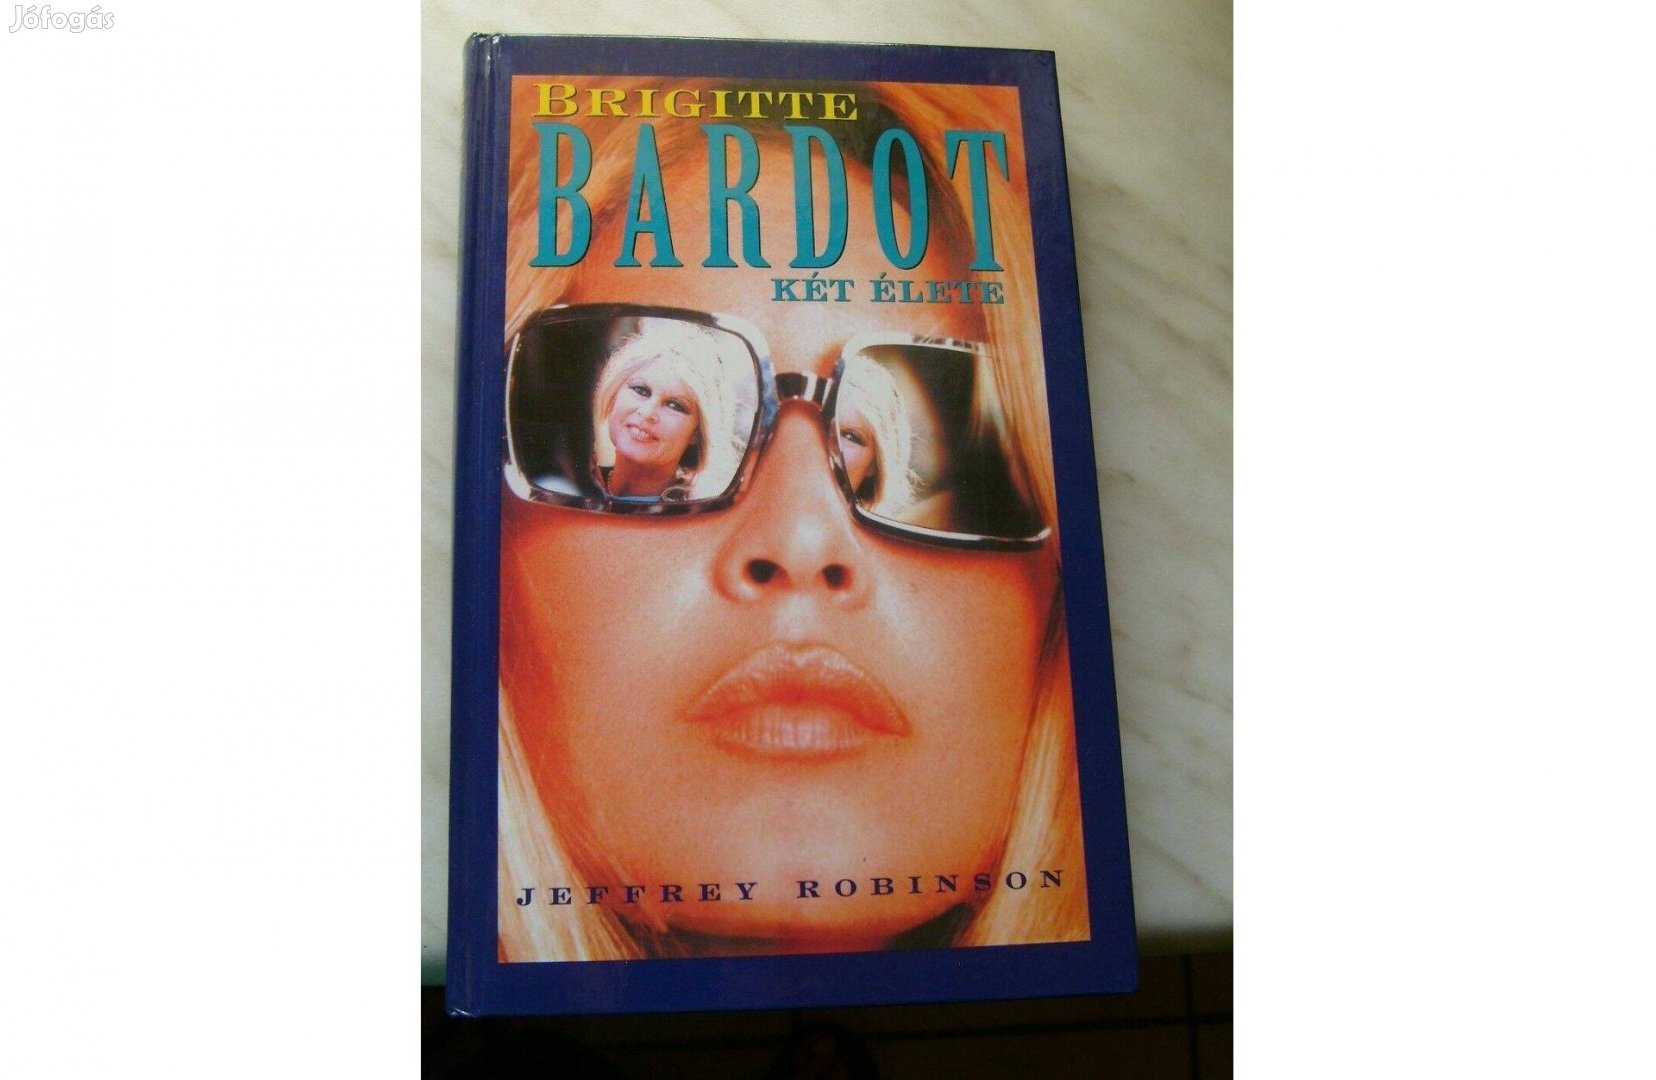 Brigitte Bardot két élete c. könyv